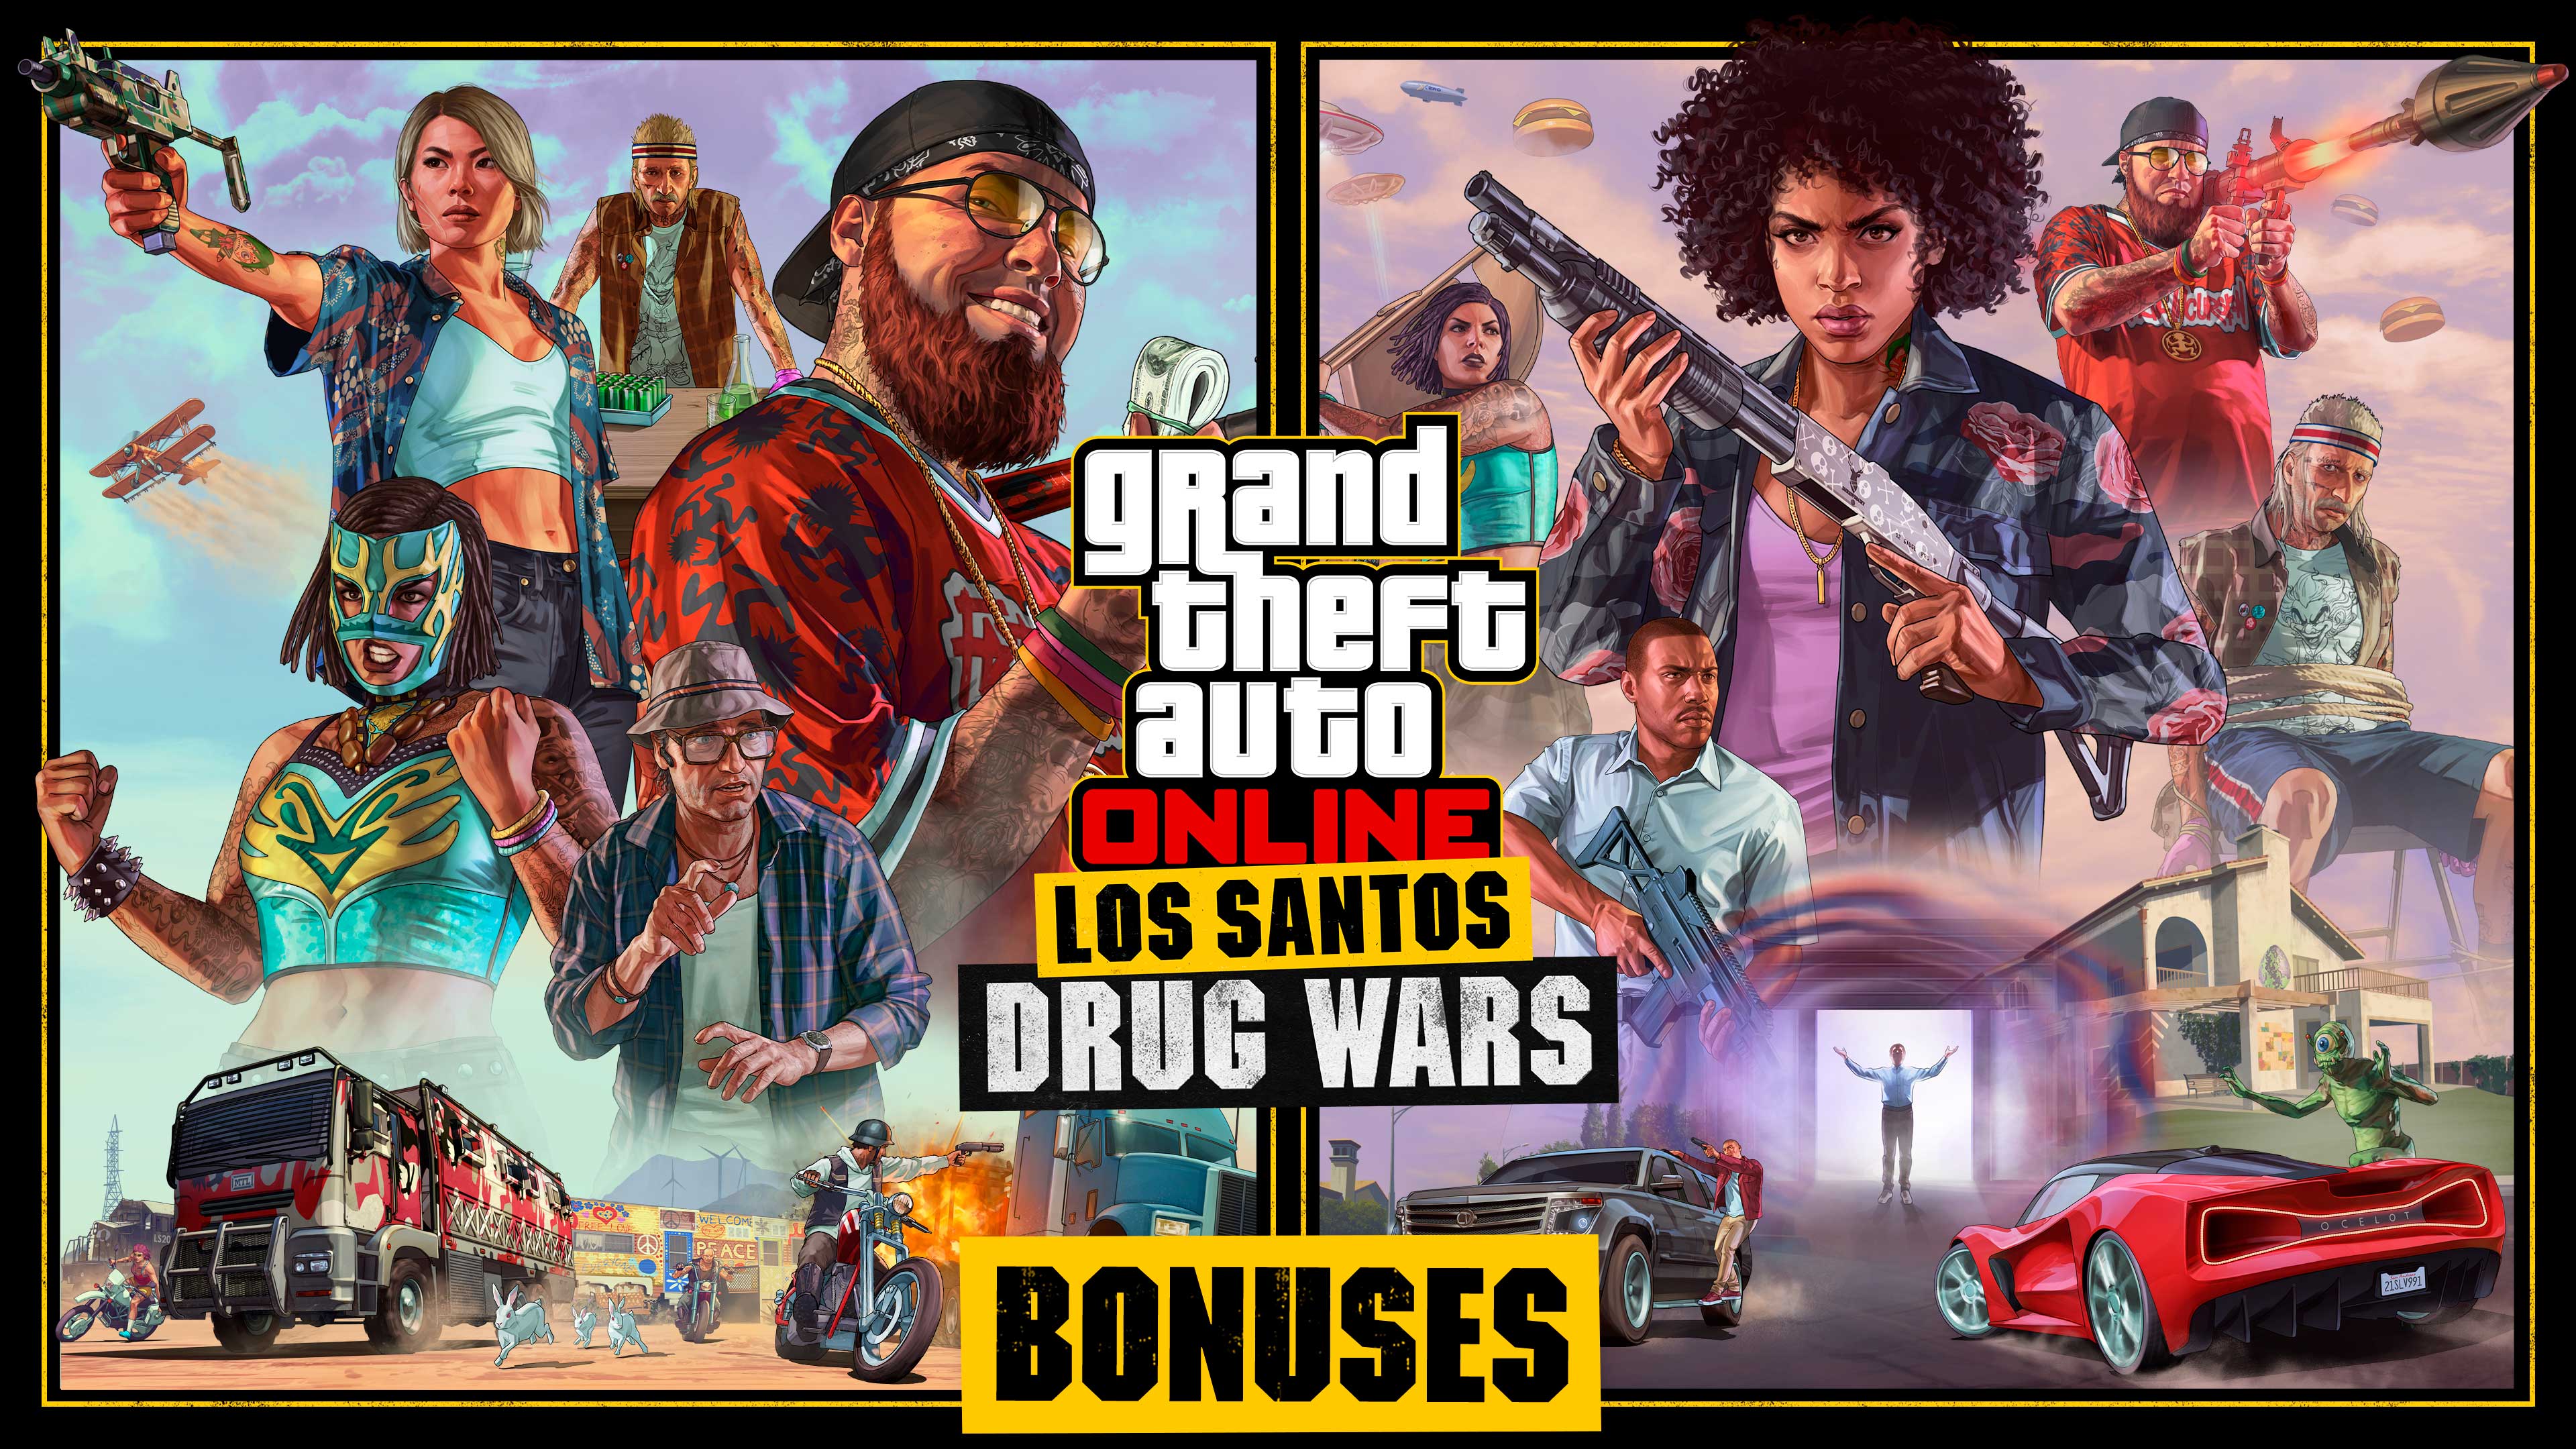 Pôster de bônus de Los Santos Drug Wars no Grand Theft Auto Online